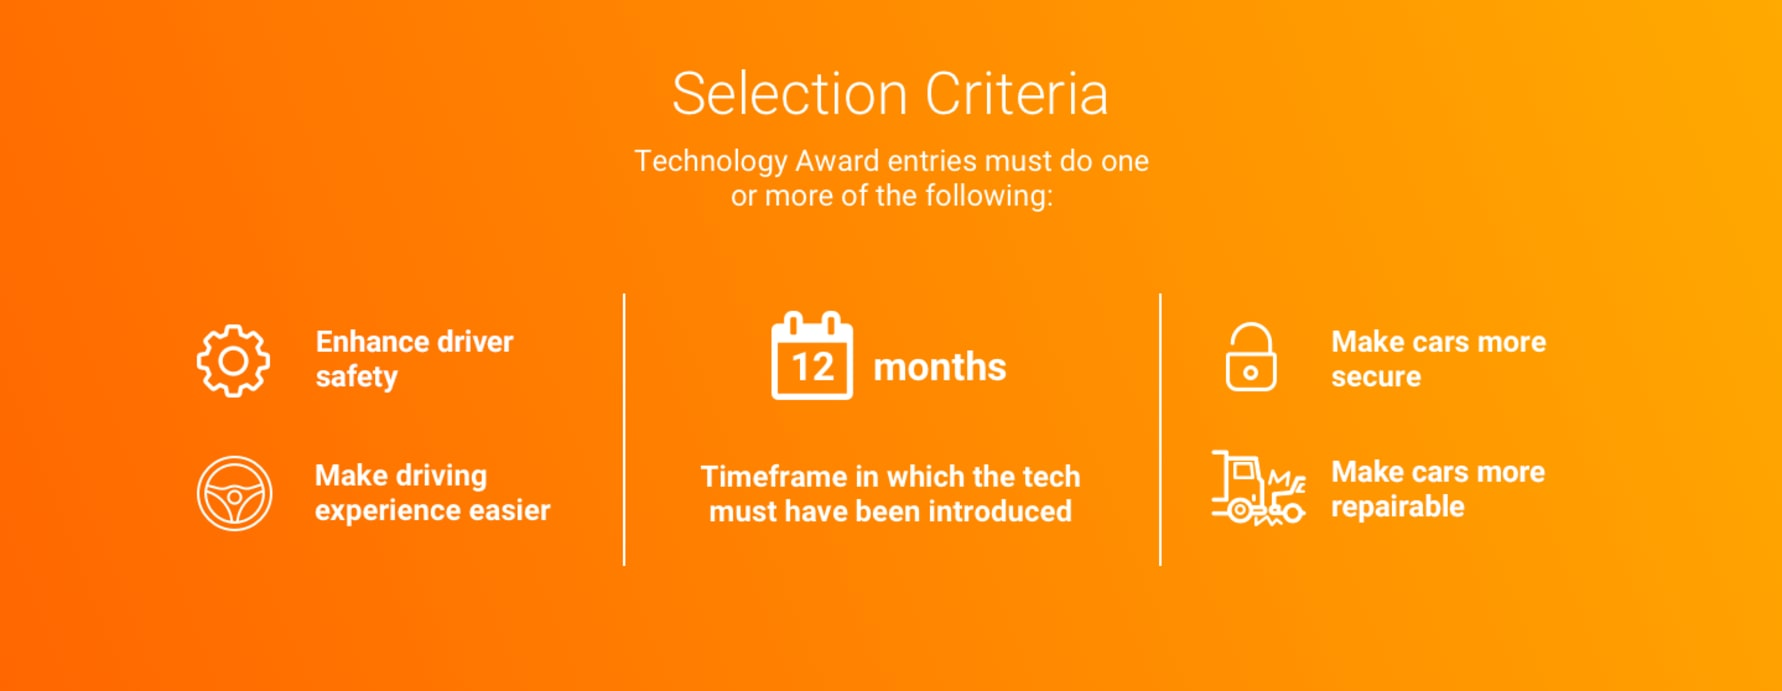 Tech Award selection criteria graphic